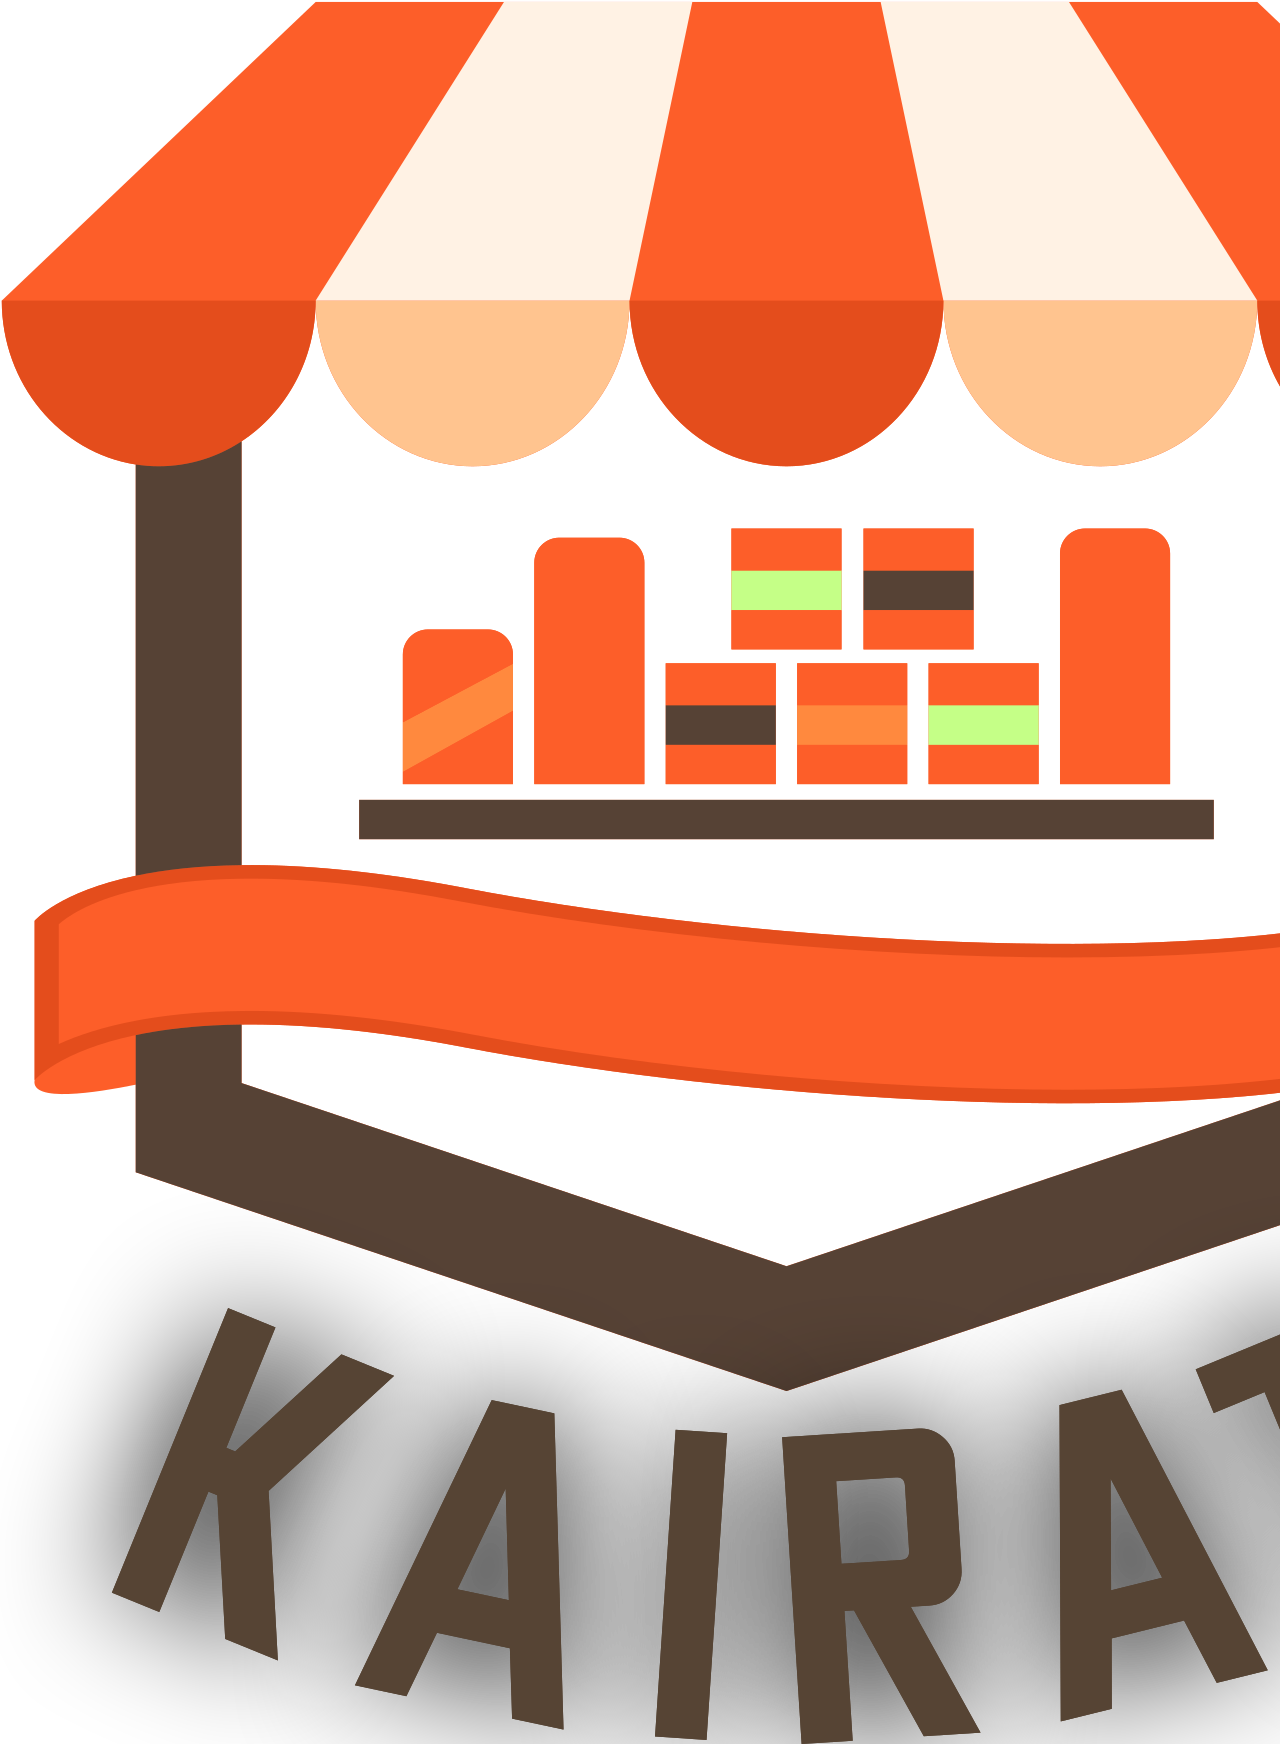 KAIRAT's logo